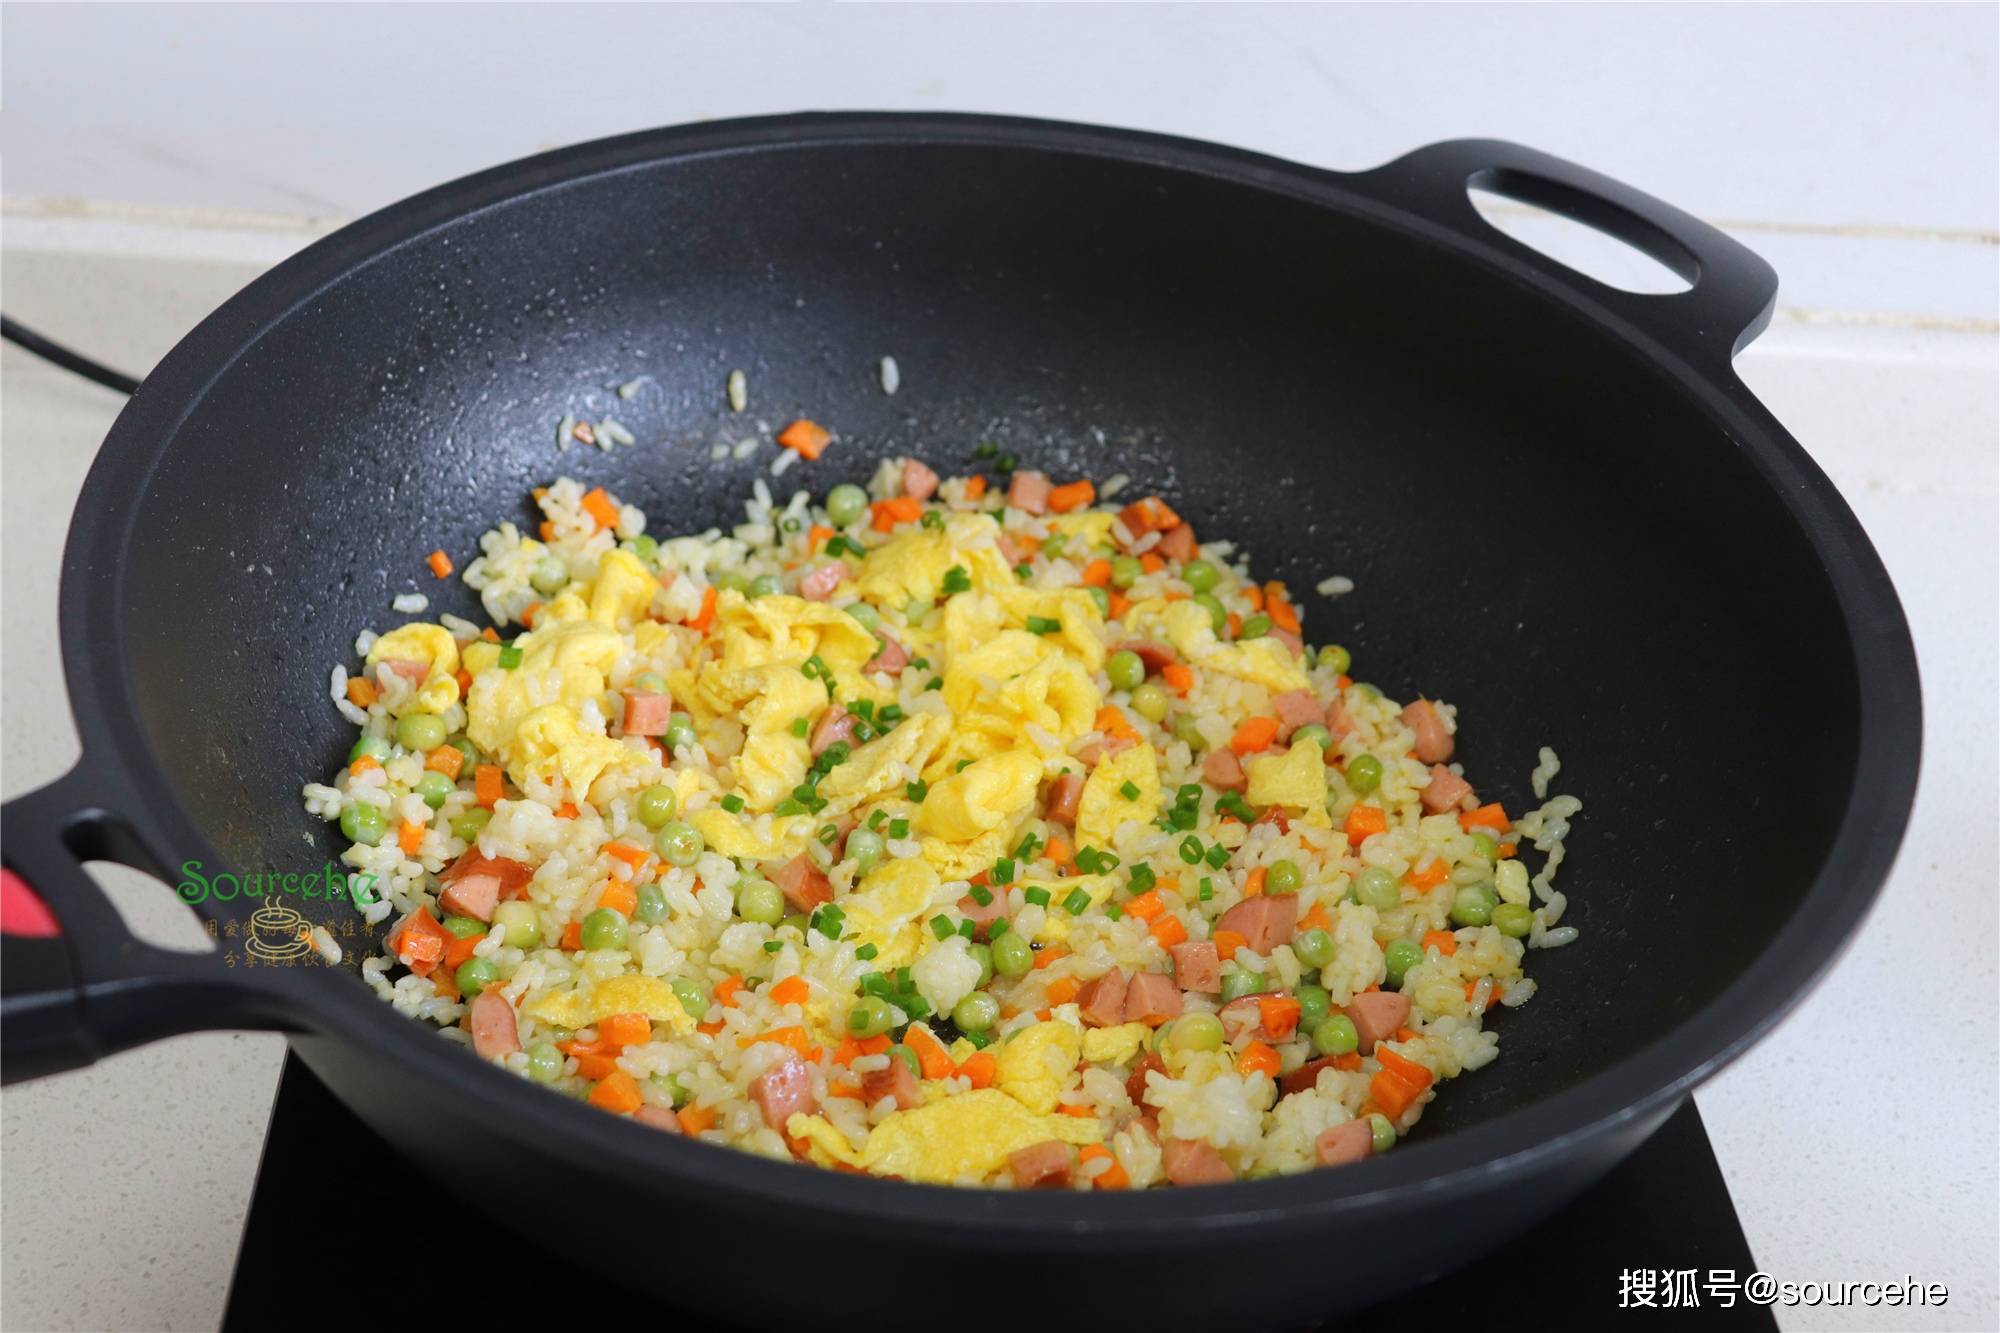 原创
            蛋炒饭时多加一步，米饭可以在锅中跳舞，粒粒分明，很好吃！
                
                 